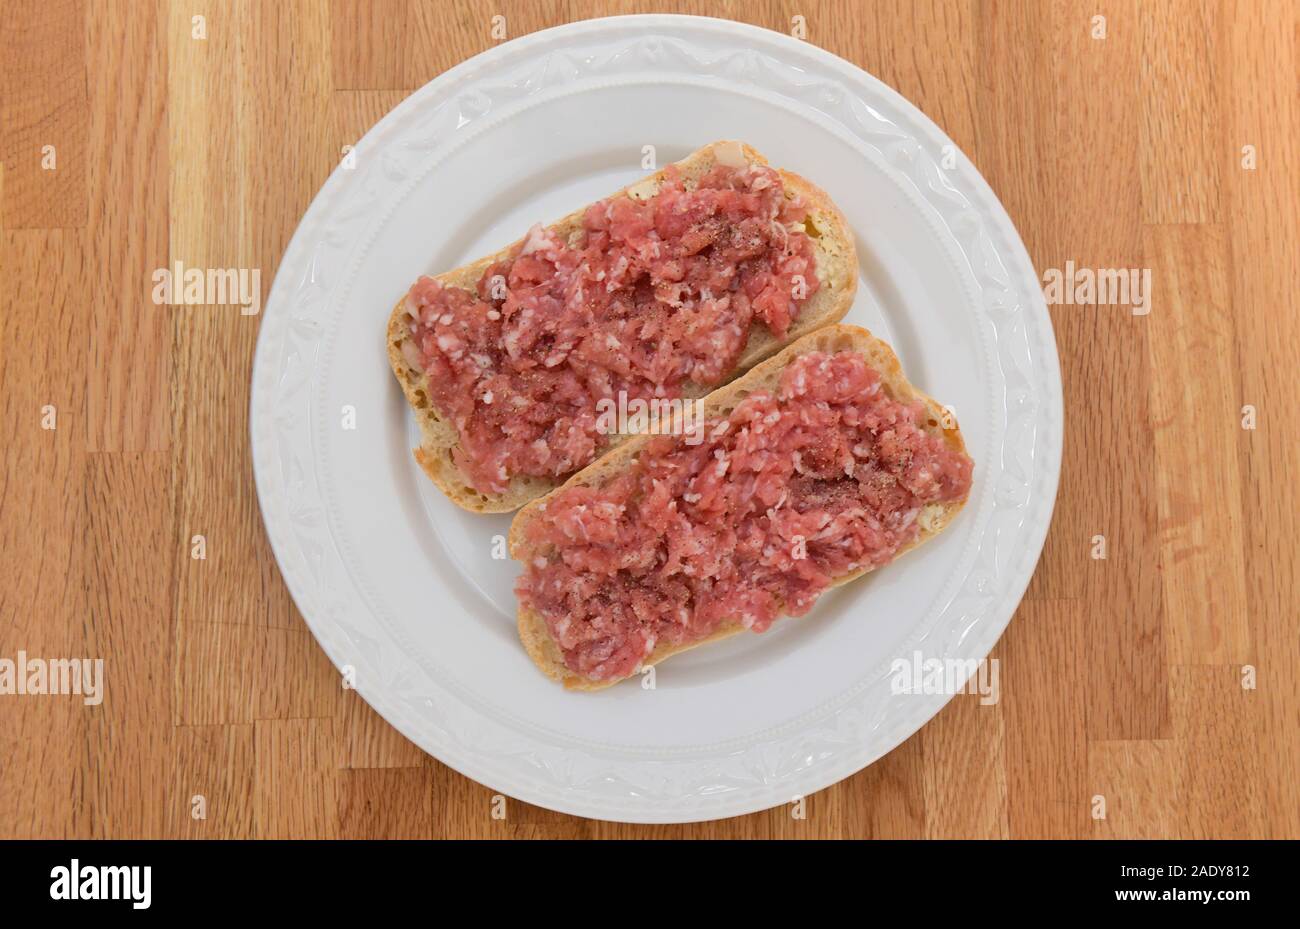 Teller mit Mettbrötchen, Fleischkonsum Stock Photo